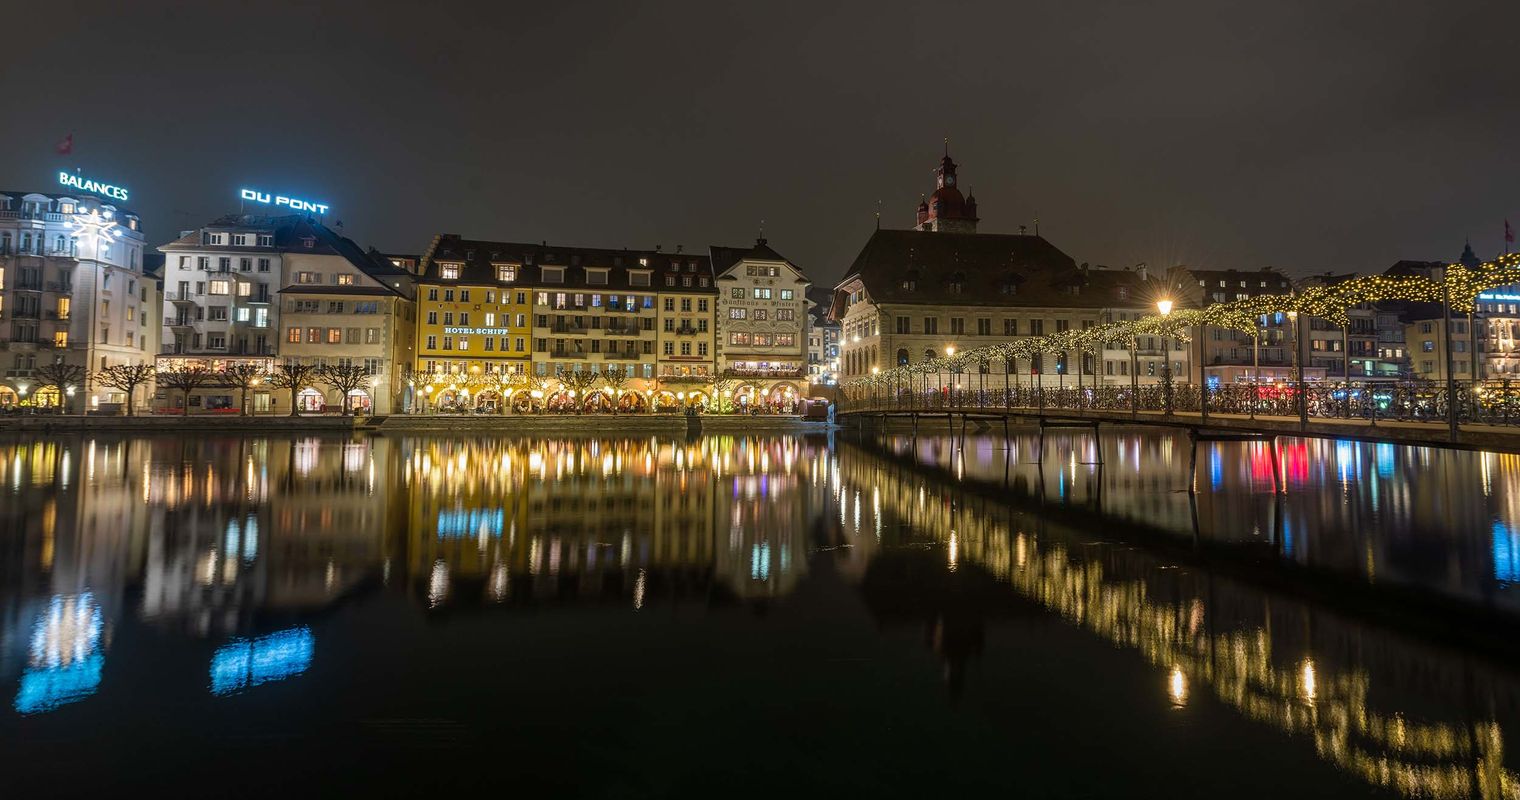 Weihnachtsbeleuchtung Luzern wird auf Sparflamme gesetzt